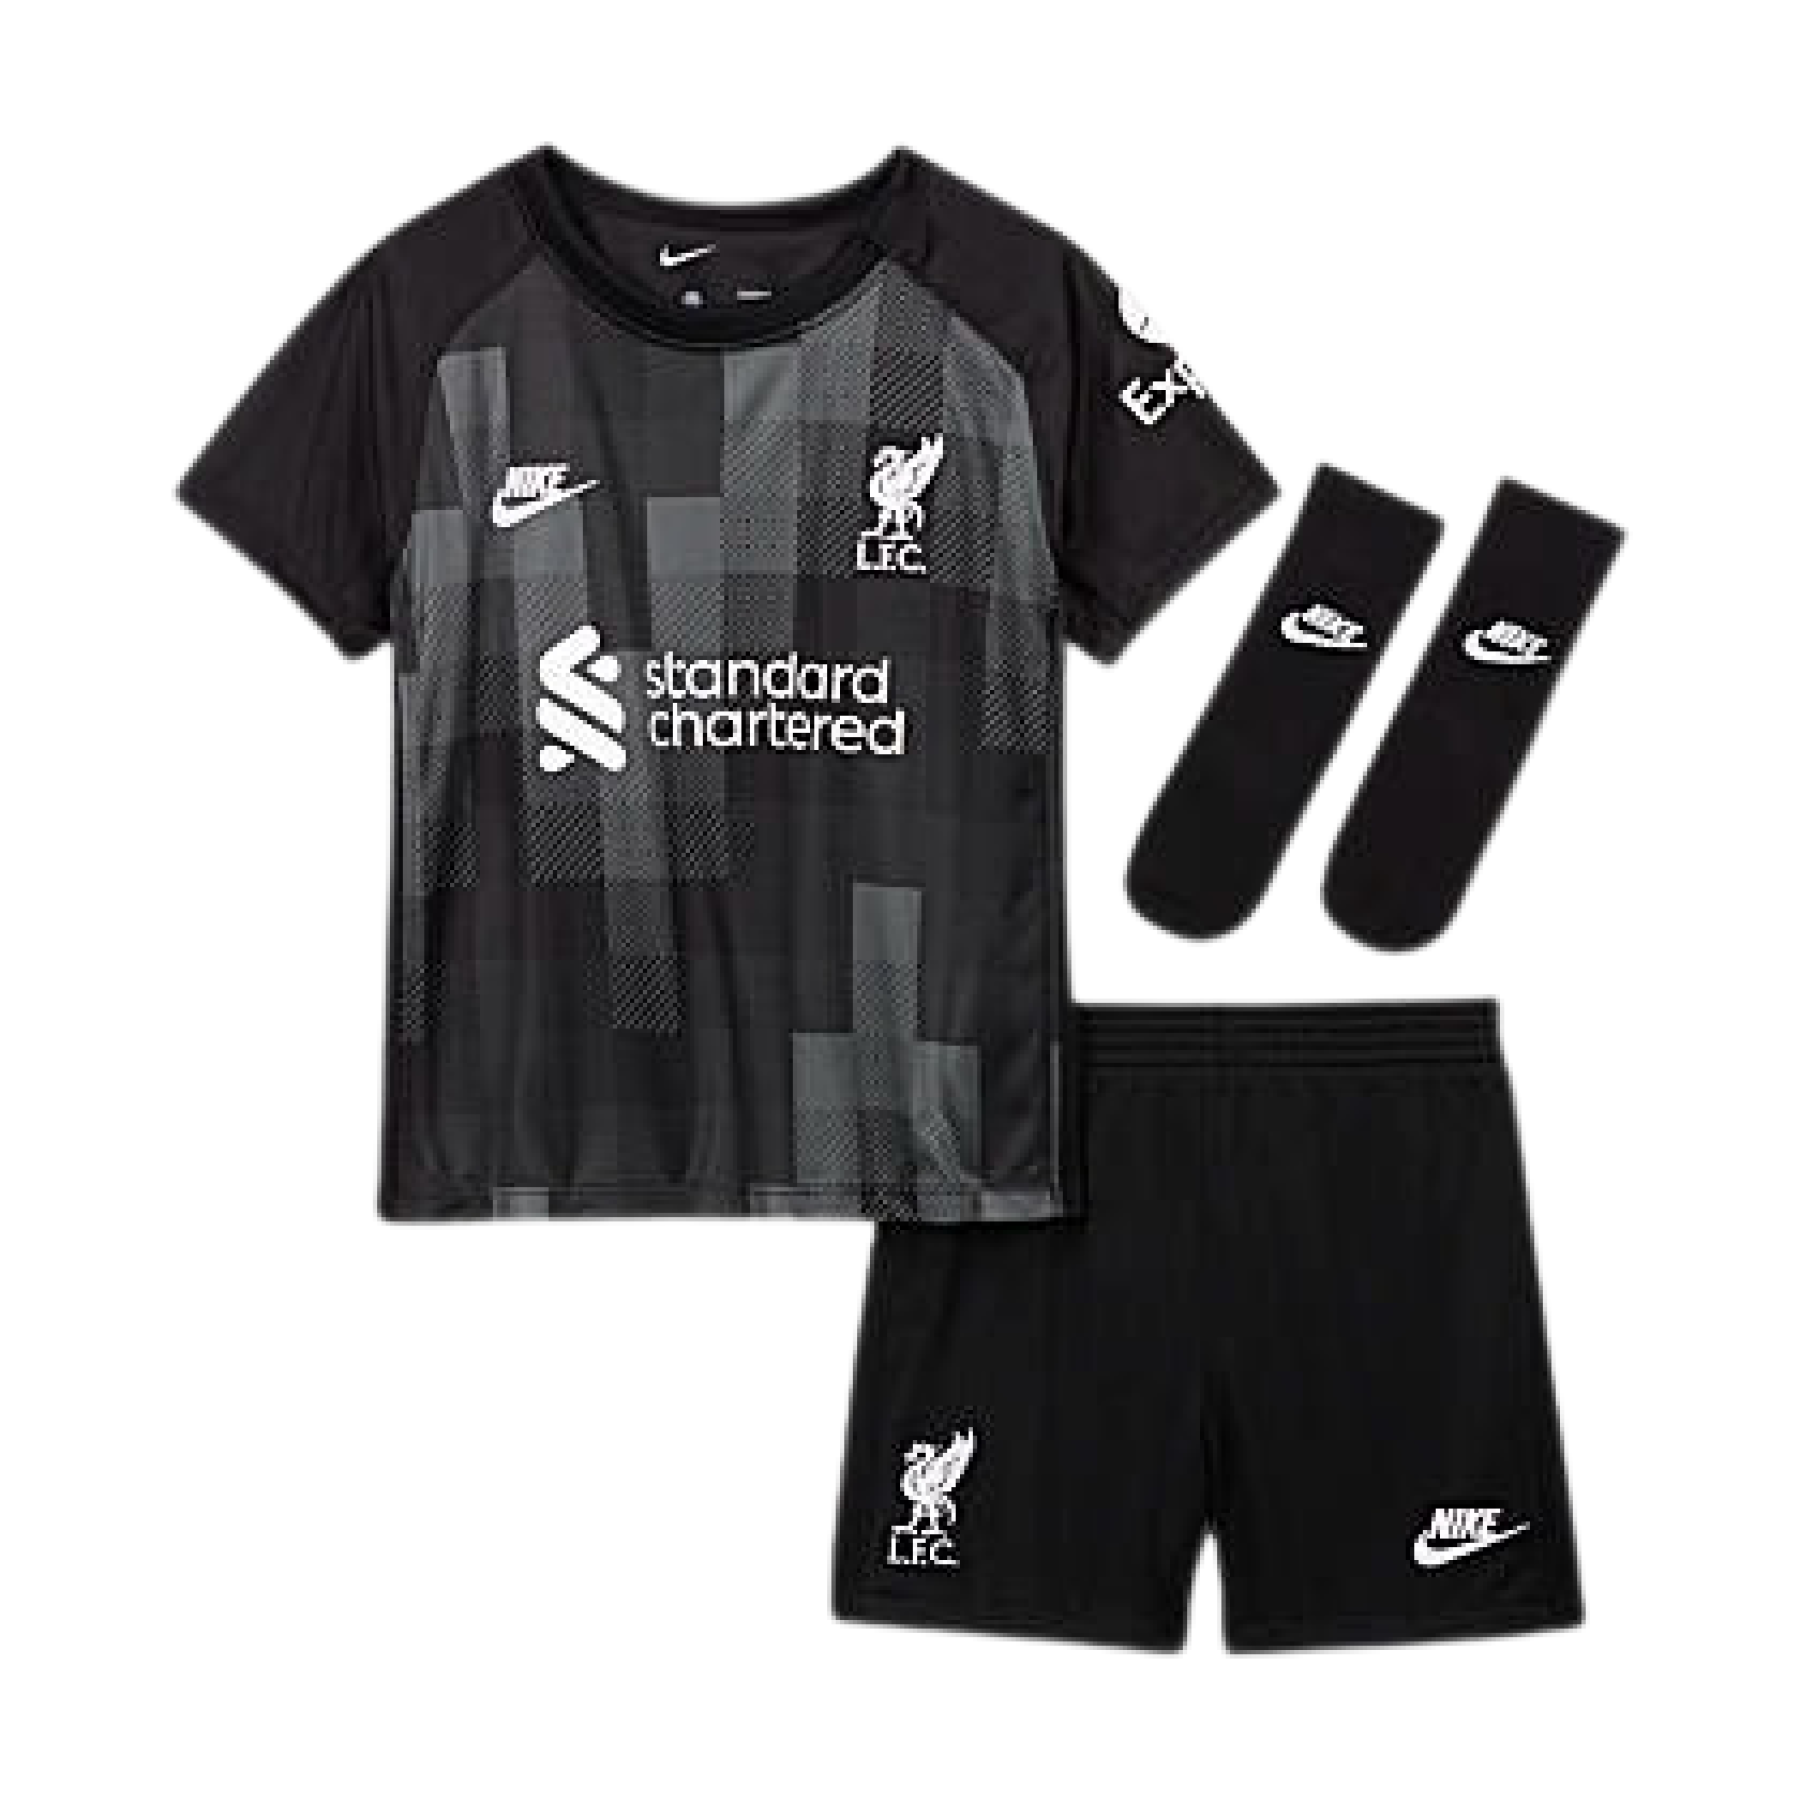 Mini-kit för vaktmästare Liverpool FC